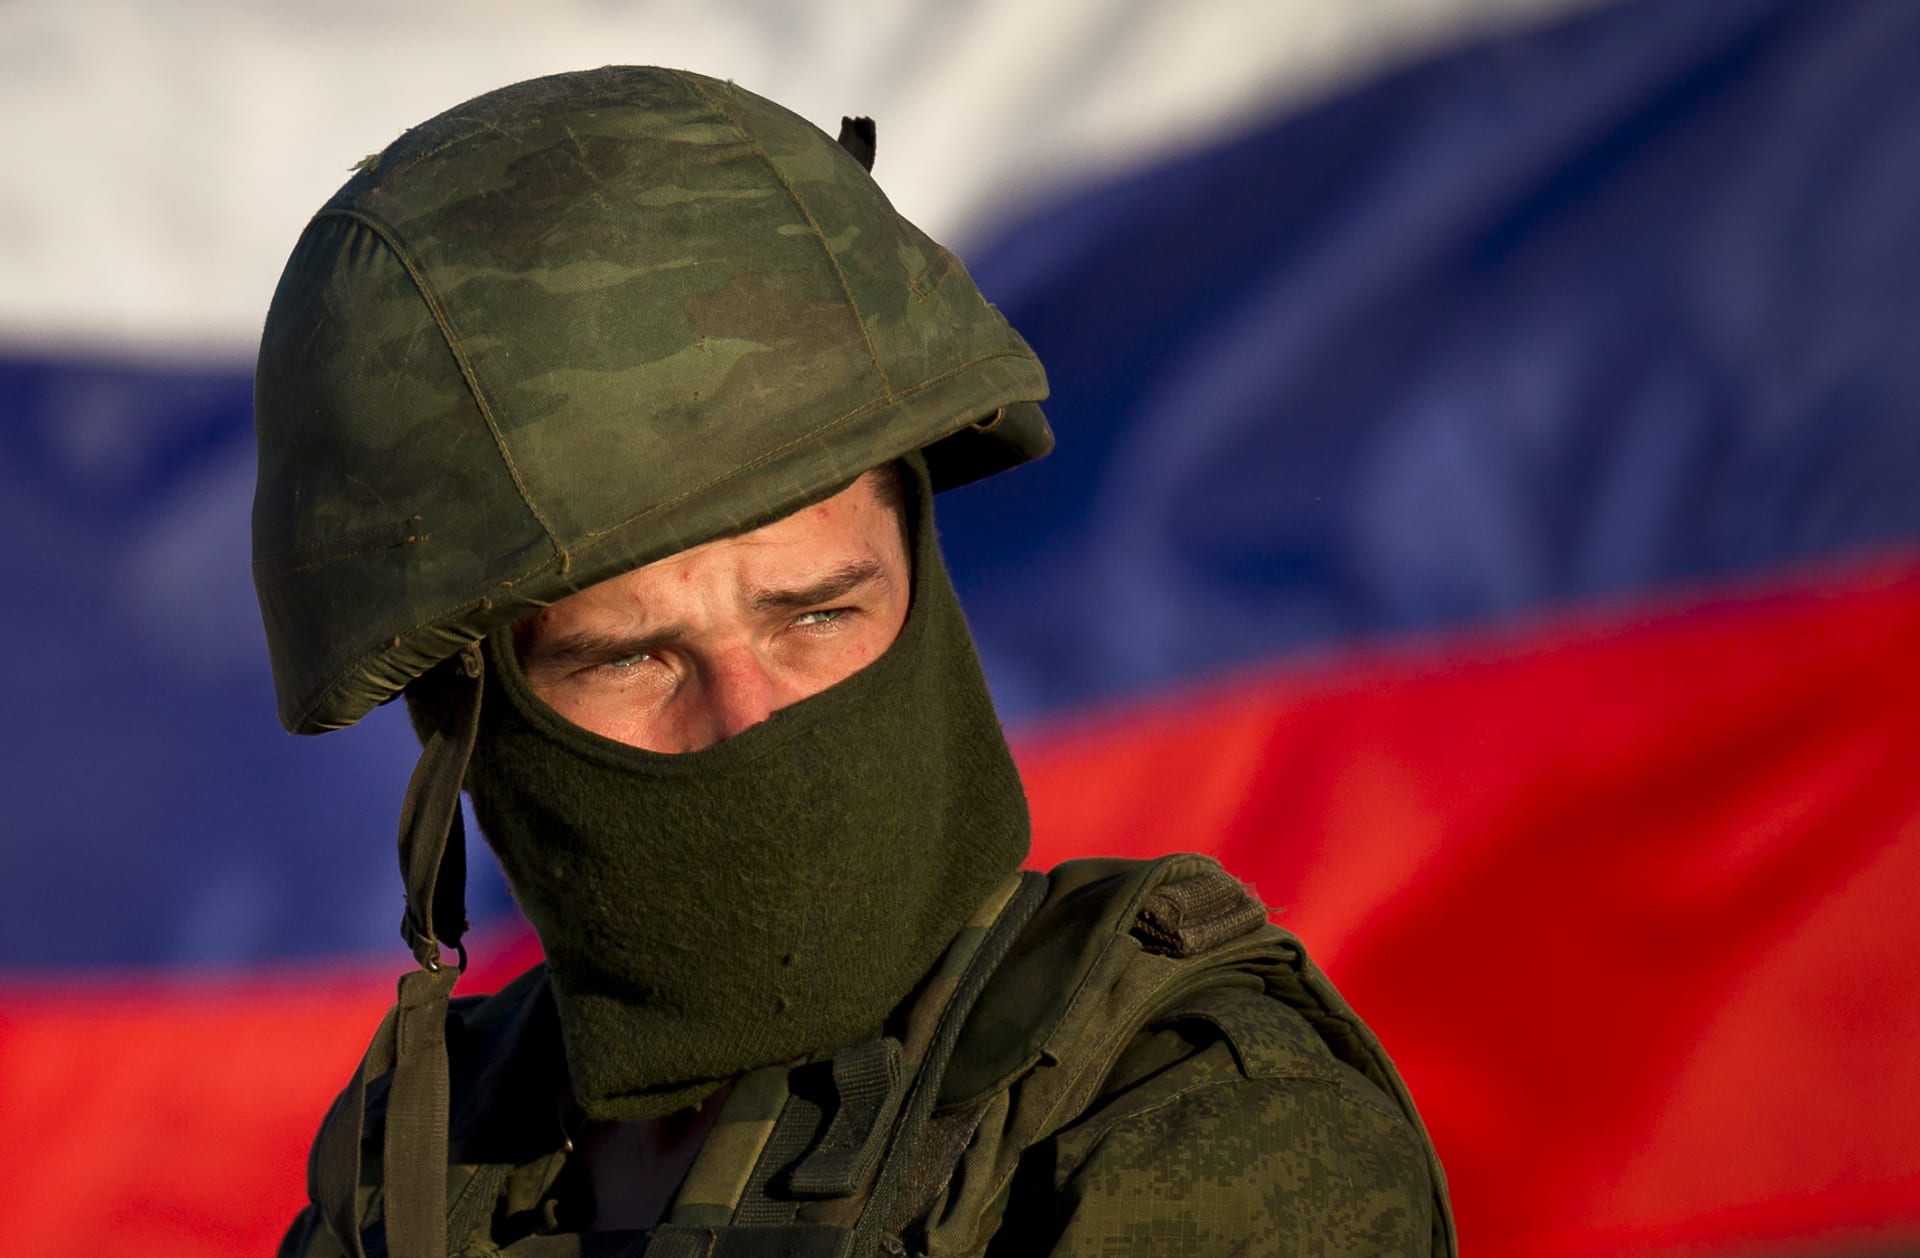 Ruští vojáci se z Ukrajiny vracejí zničení, doslova až jako „zombíci“.